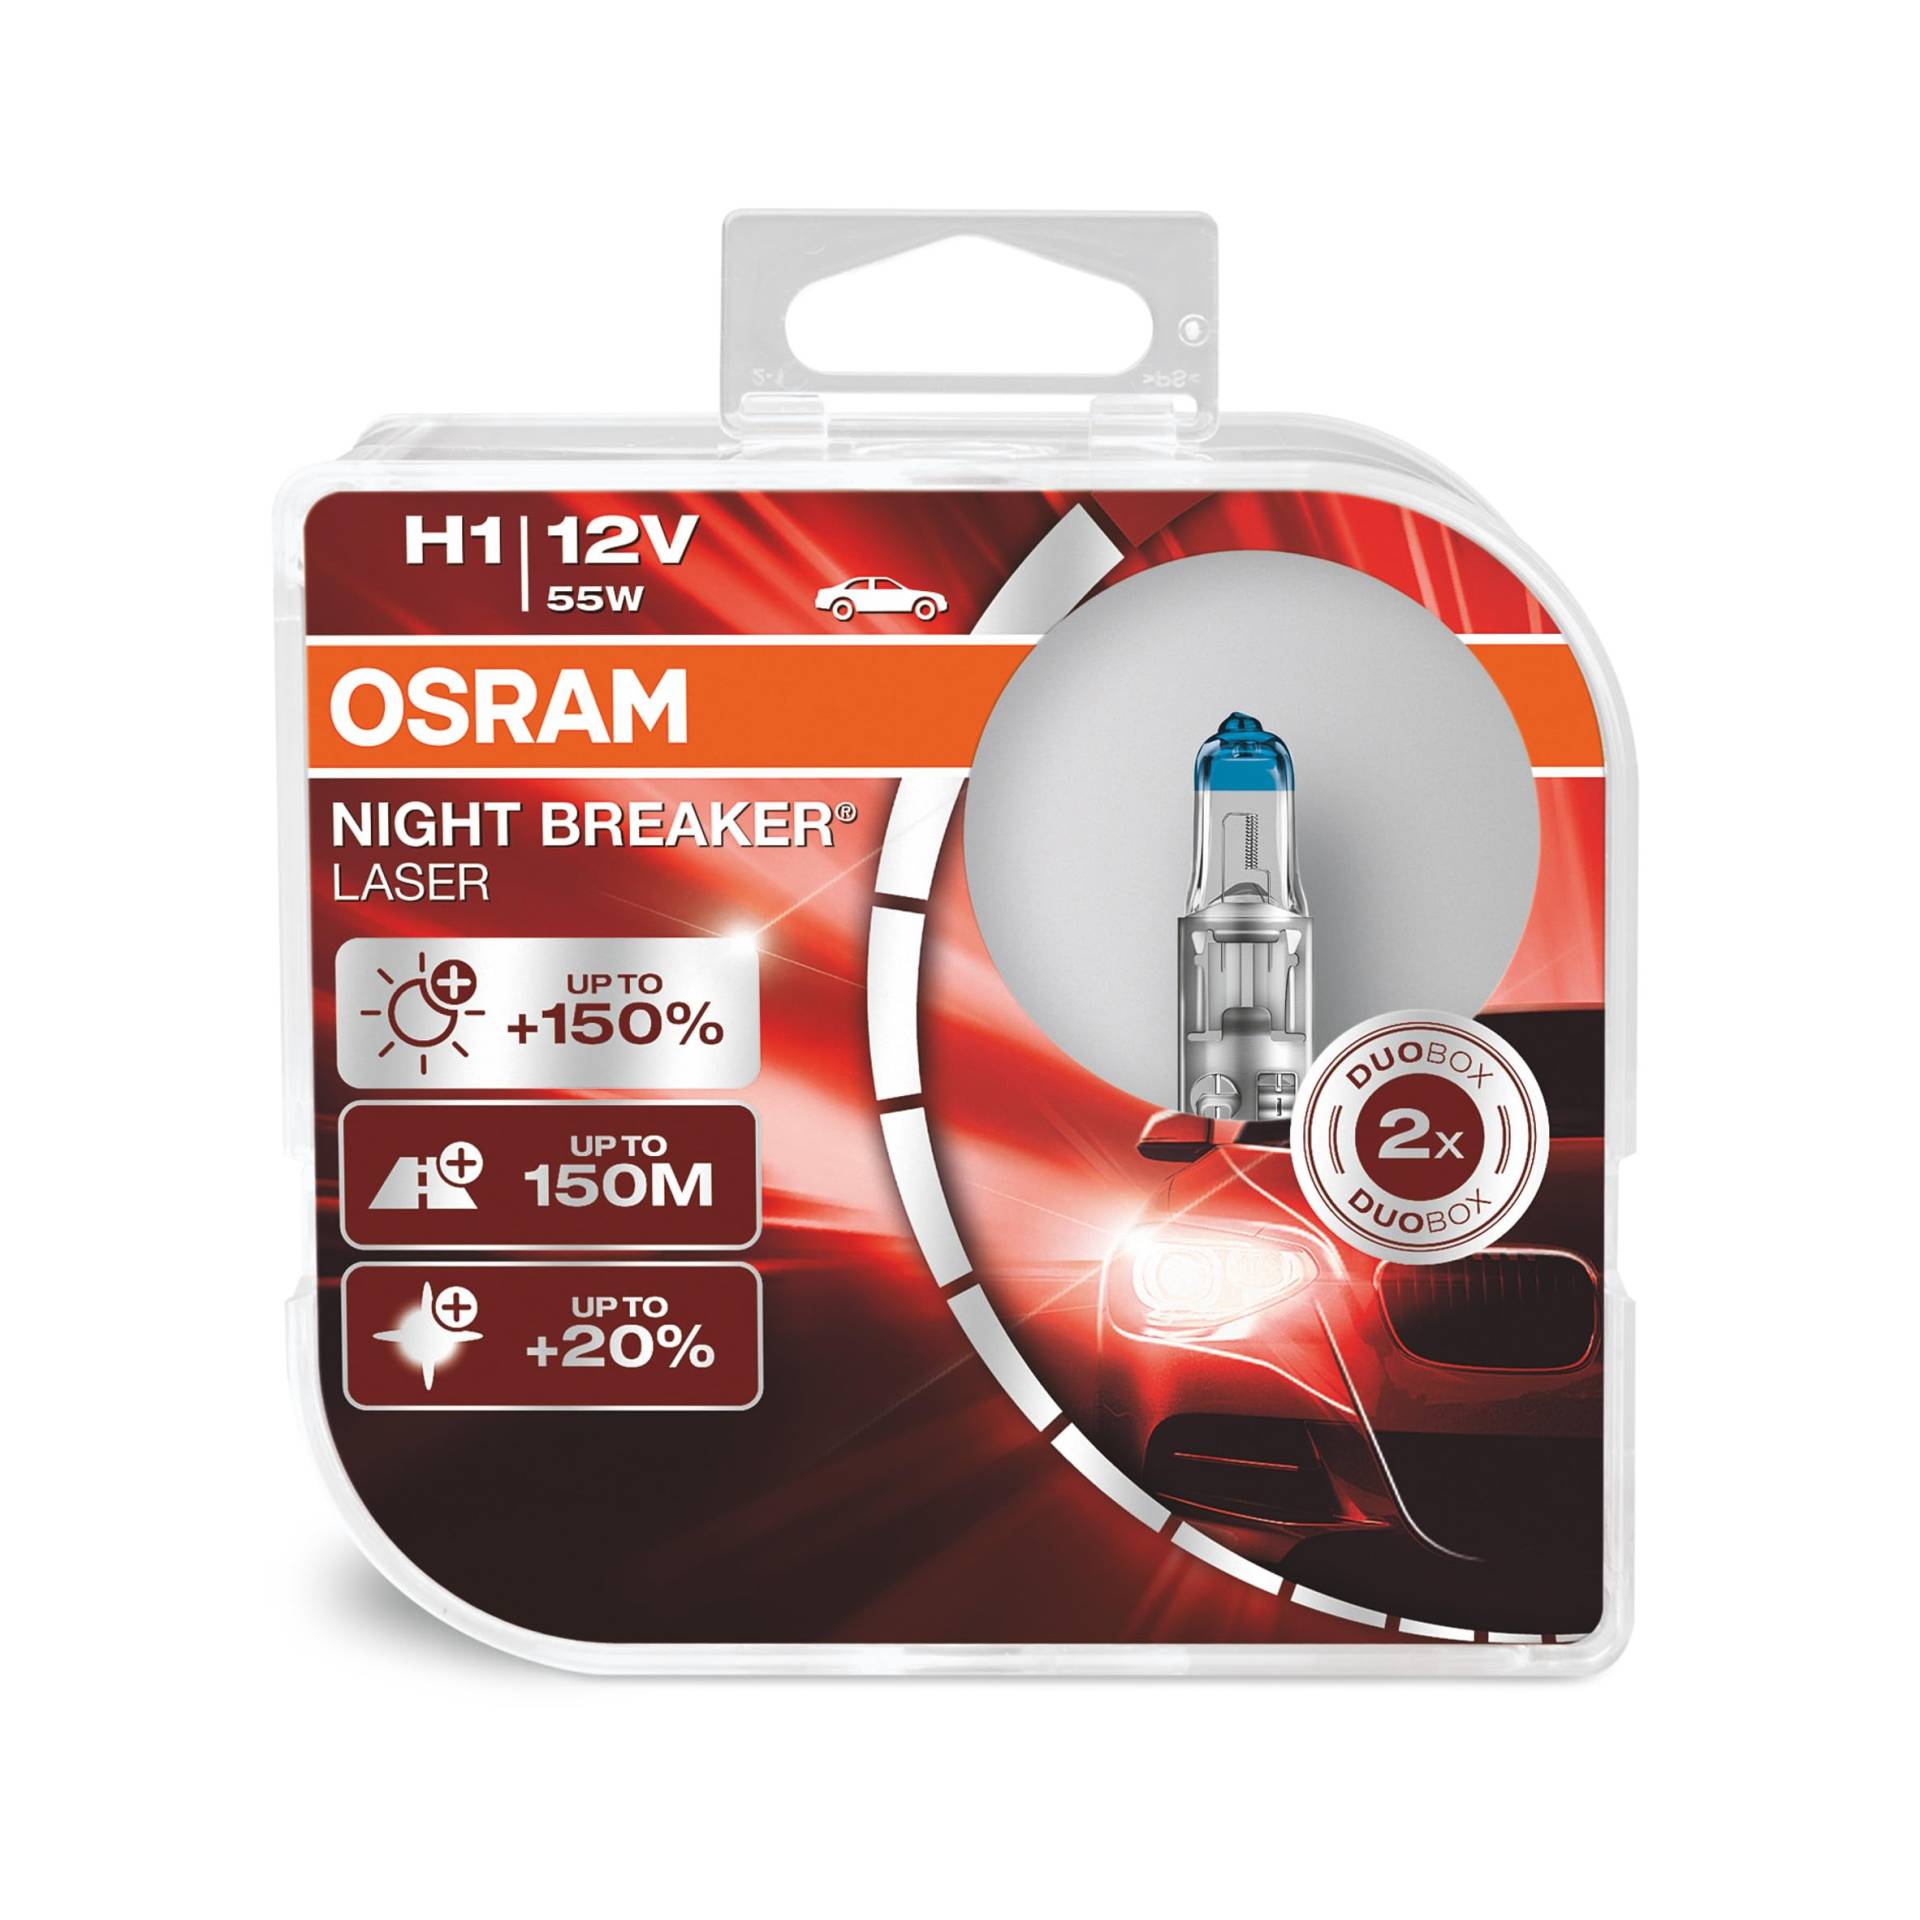 OSRAM NIGHT BREAKER LASER H1, +150% mehr Helligkeit, Halogen-Scheinwerferlampe, 64150NL-HCB, 12V PKW, Duo Box (2 Lampen) von Osram